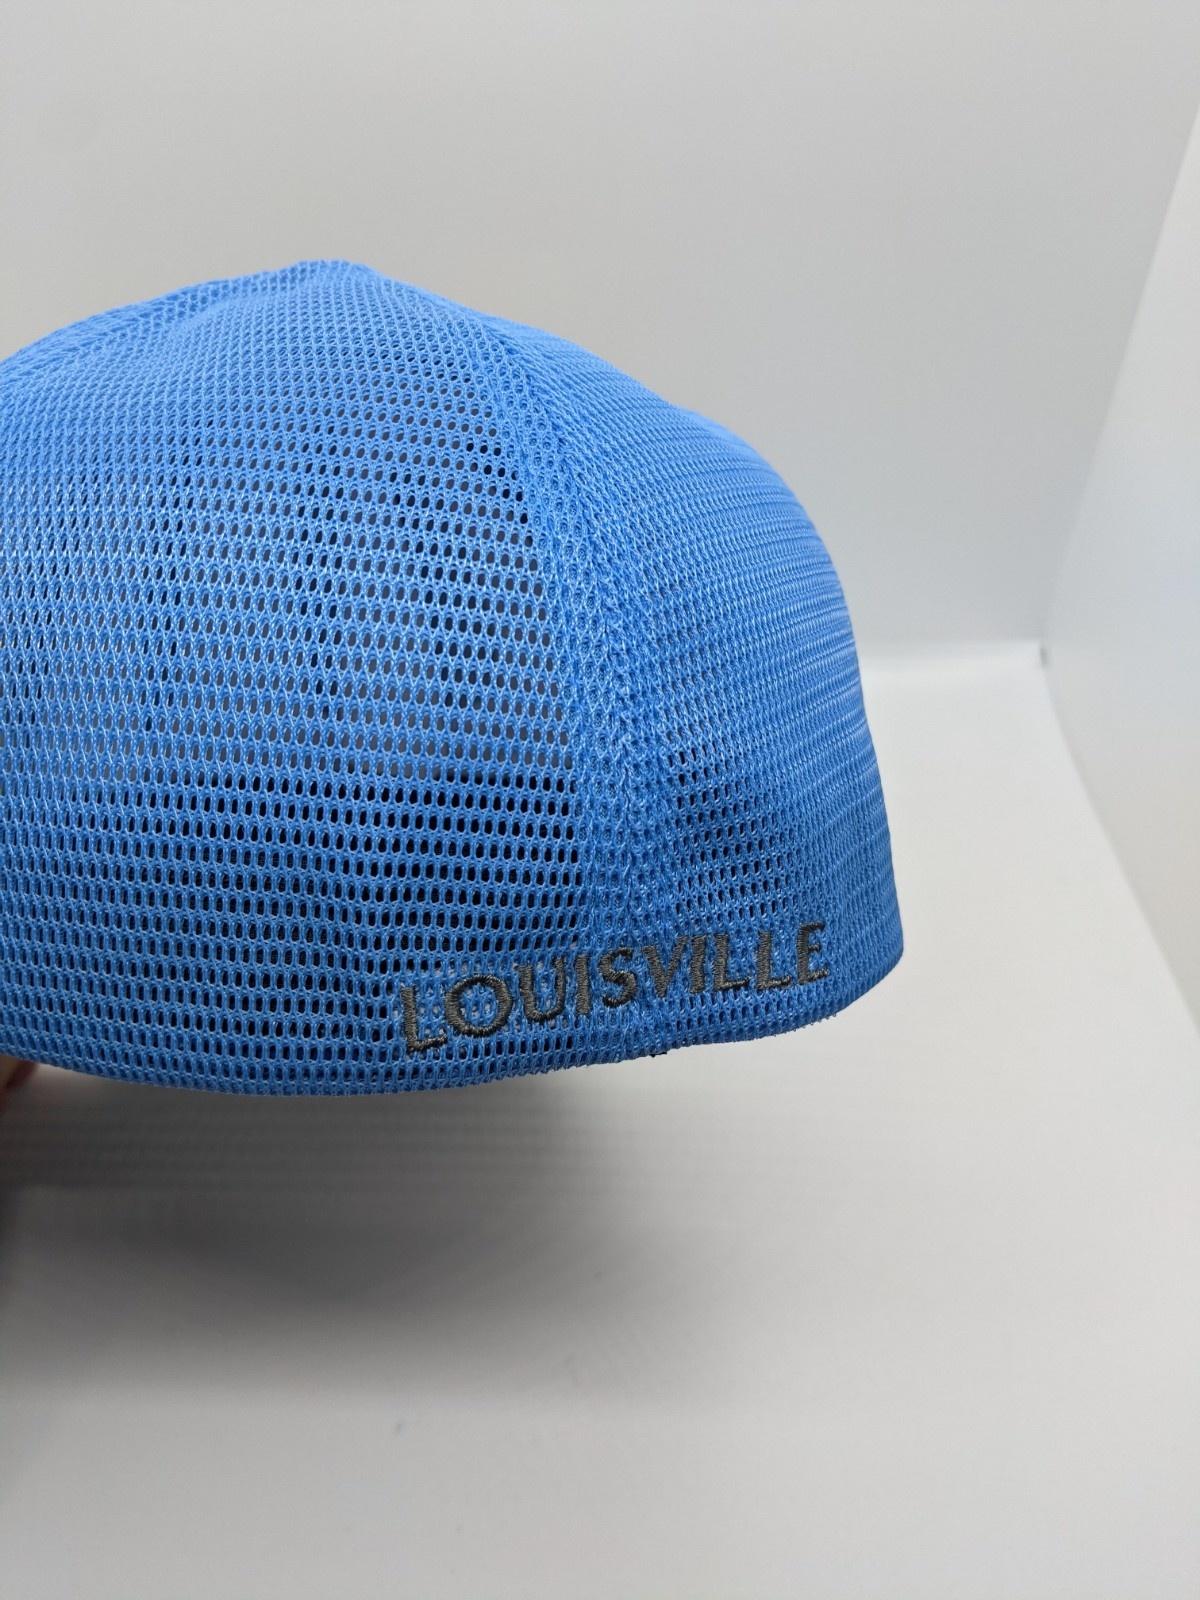 Louisville Slugger TPS Flexfit Hat (Black), 15,00 €